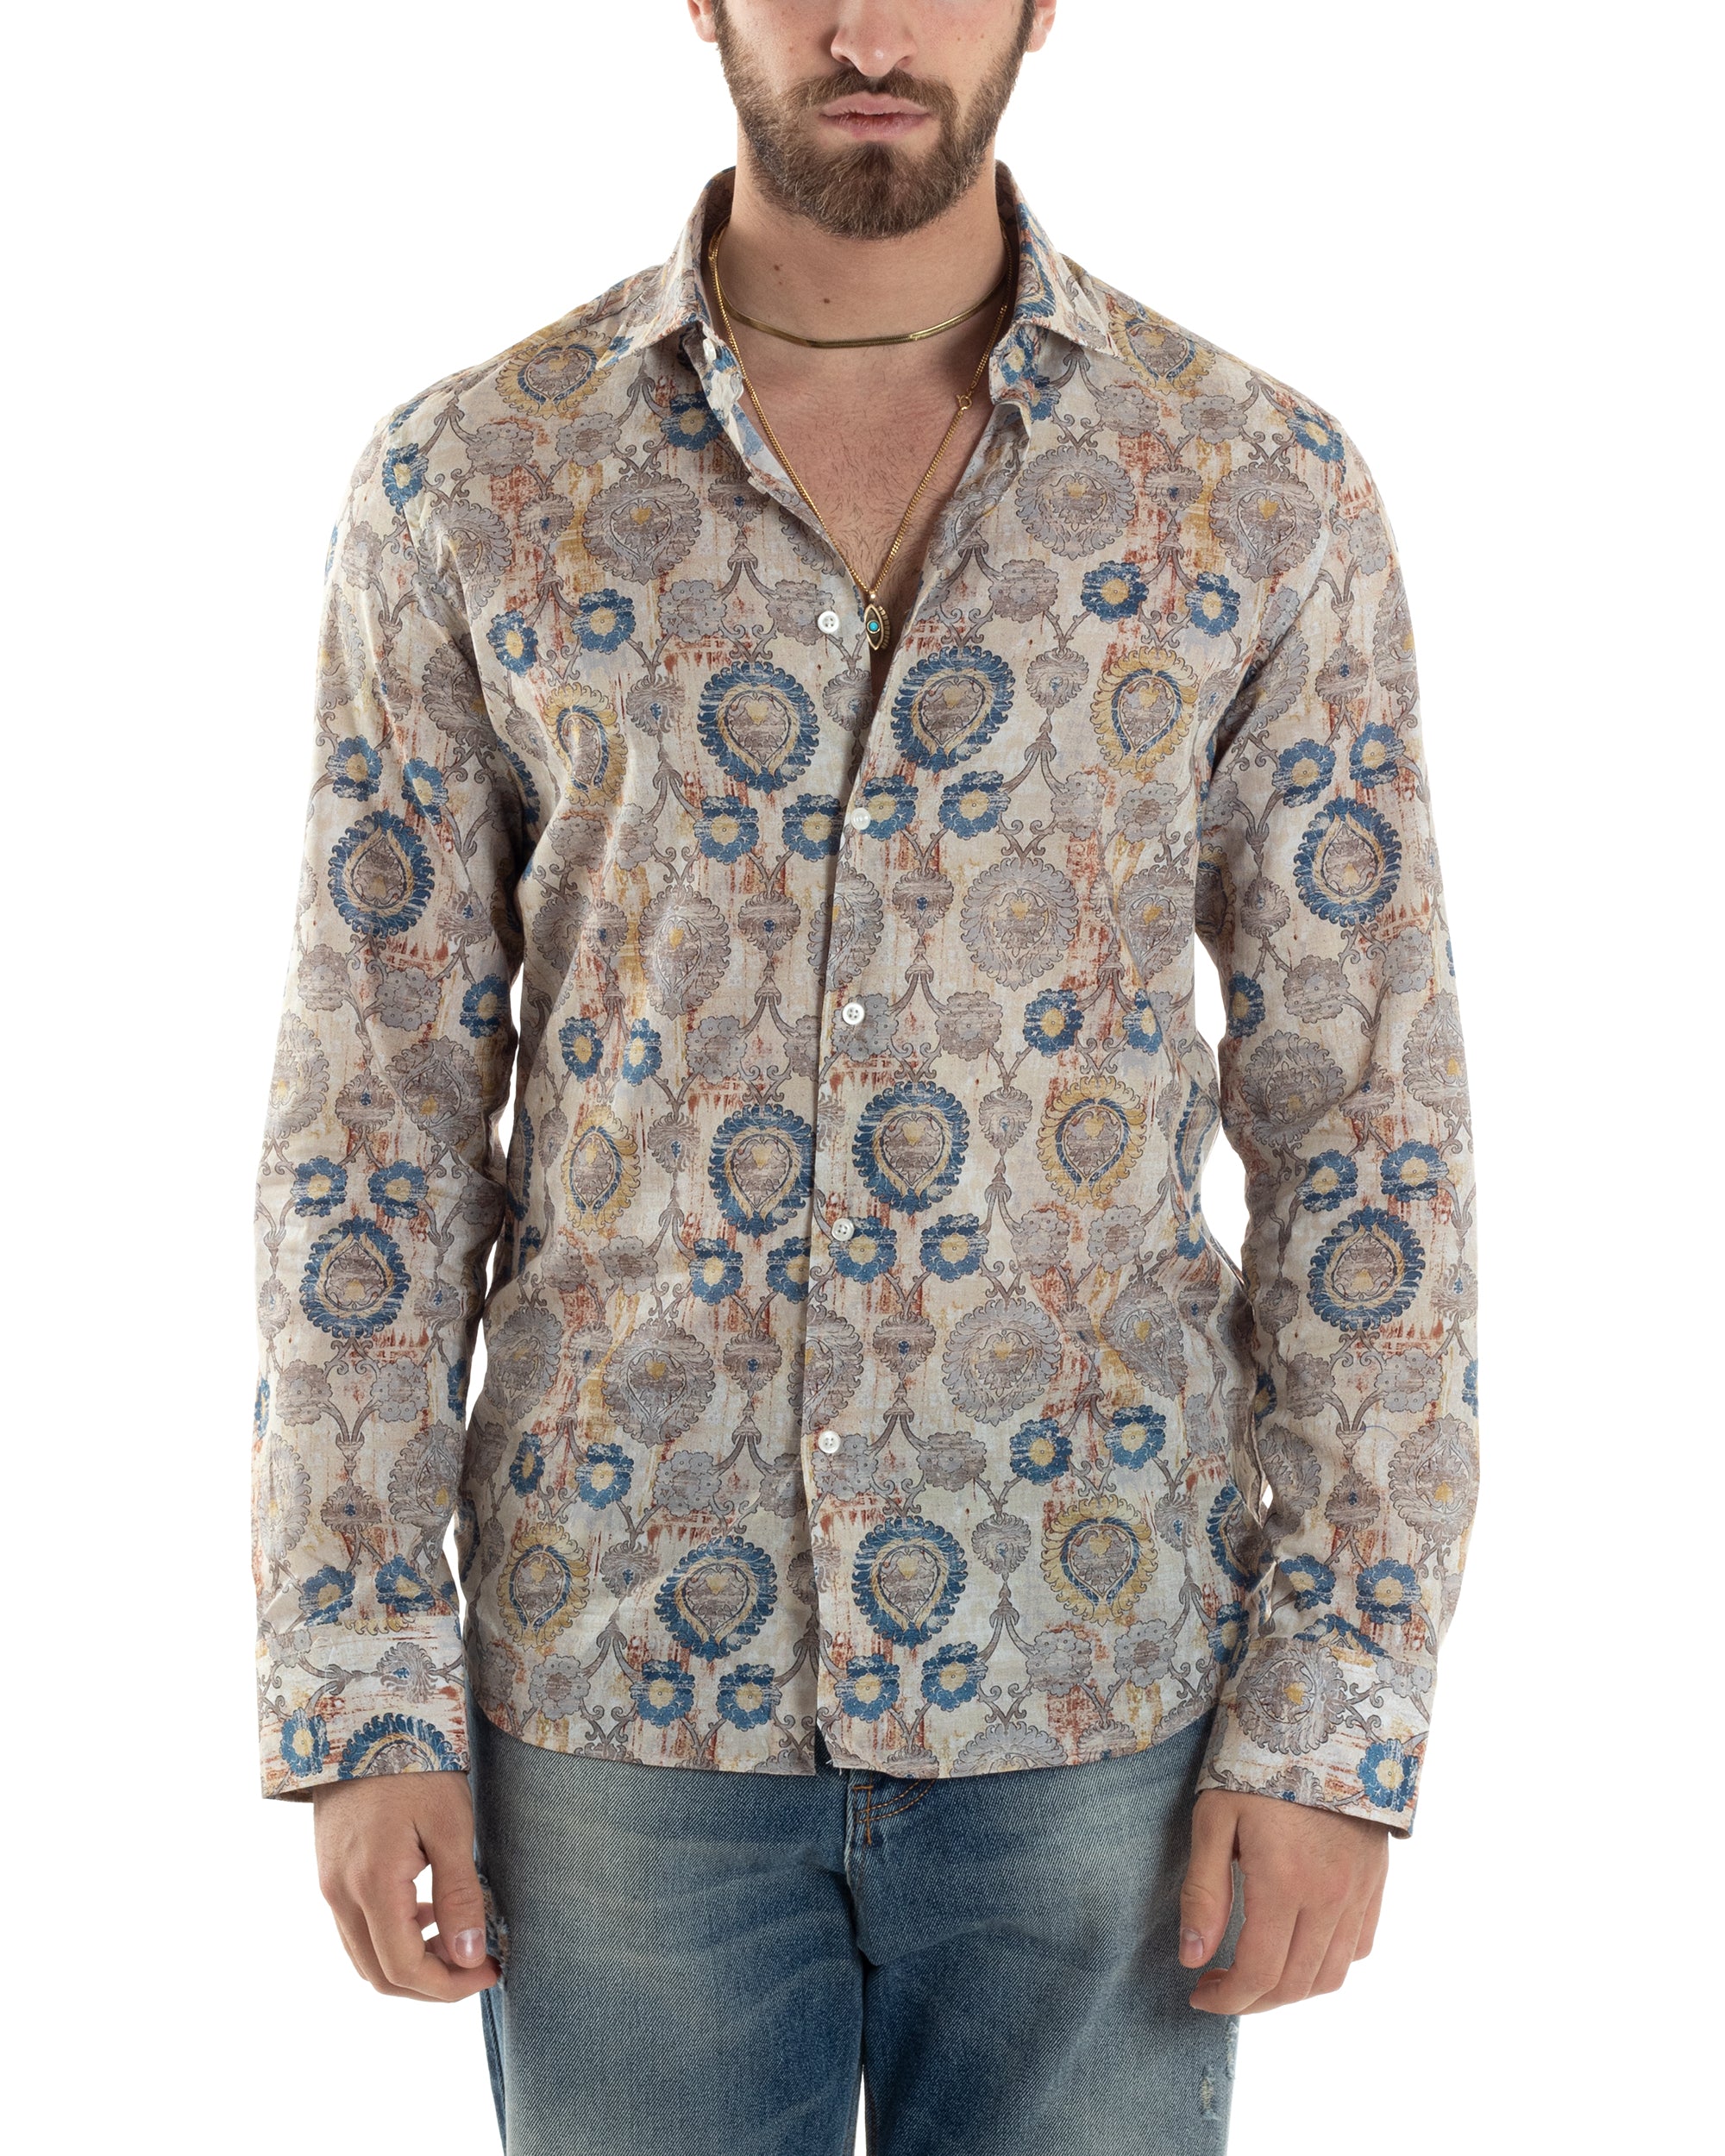 Camicia Uomo Manica Lunga Collo Francese Con Colletto Slim Fit Multicolore Fantasia Etnica GIOSAL-C2853A